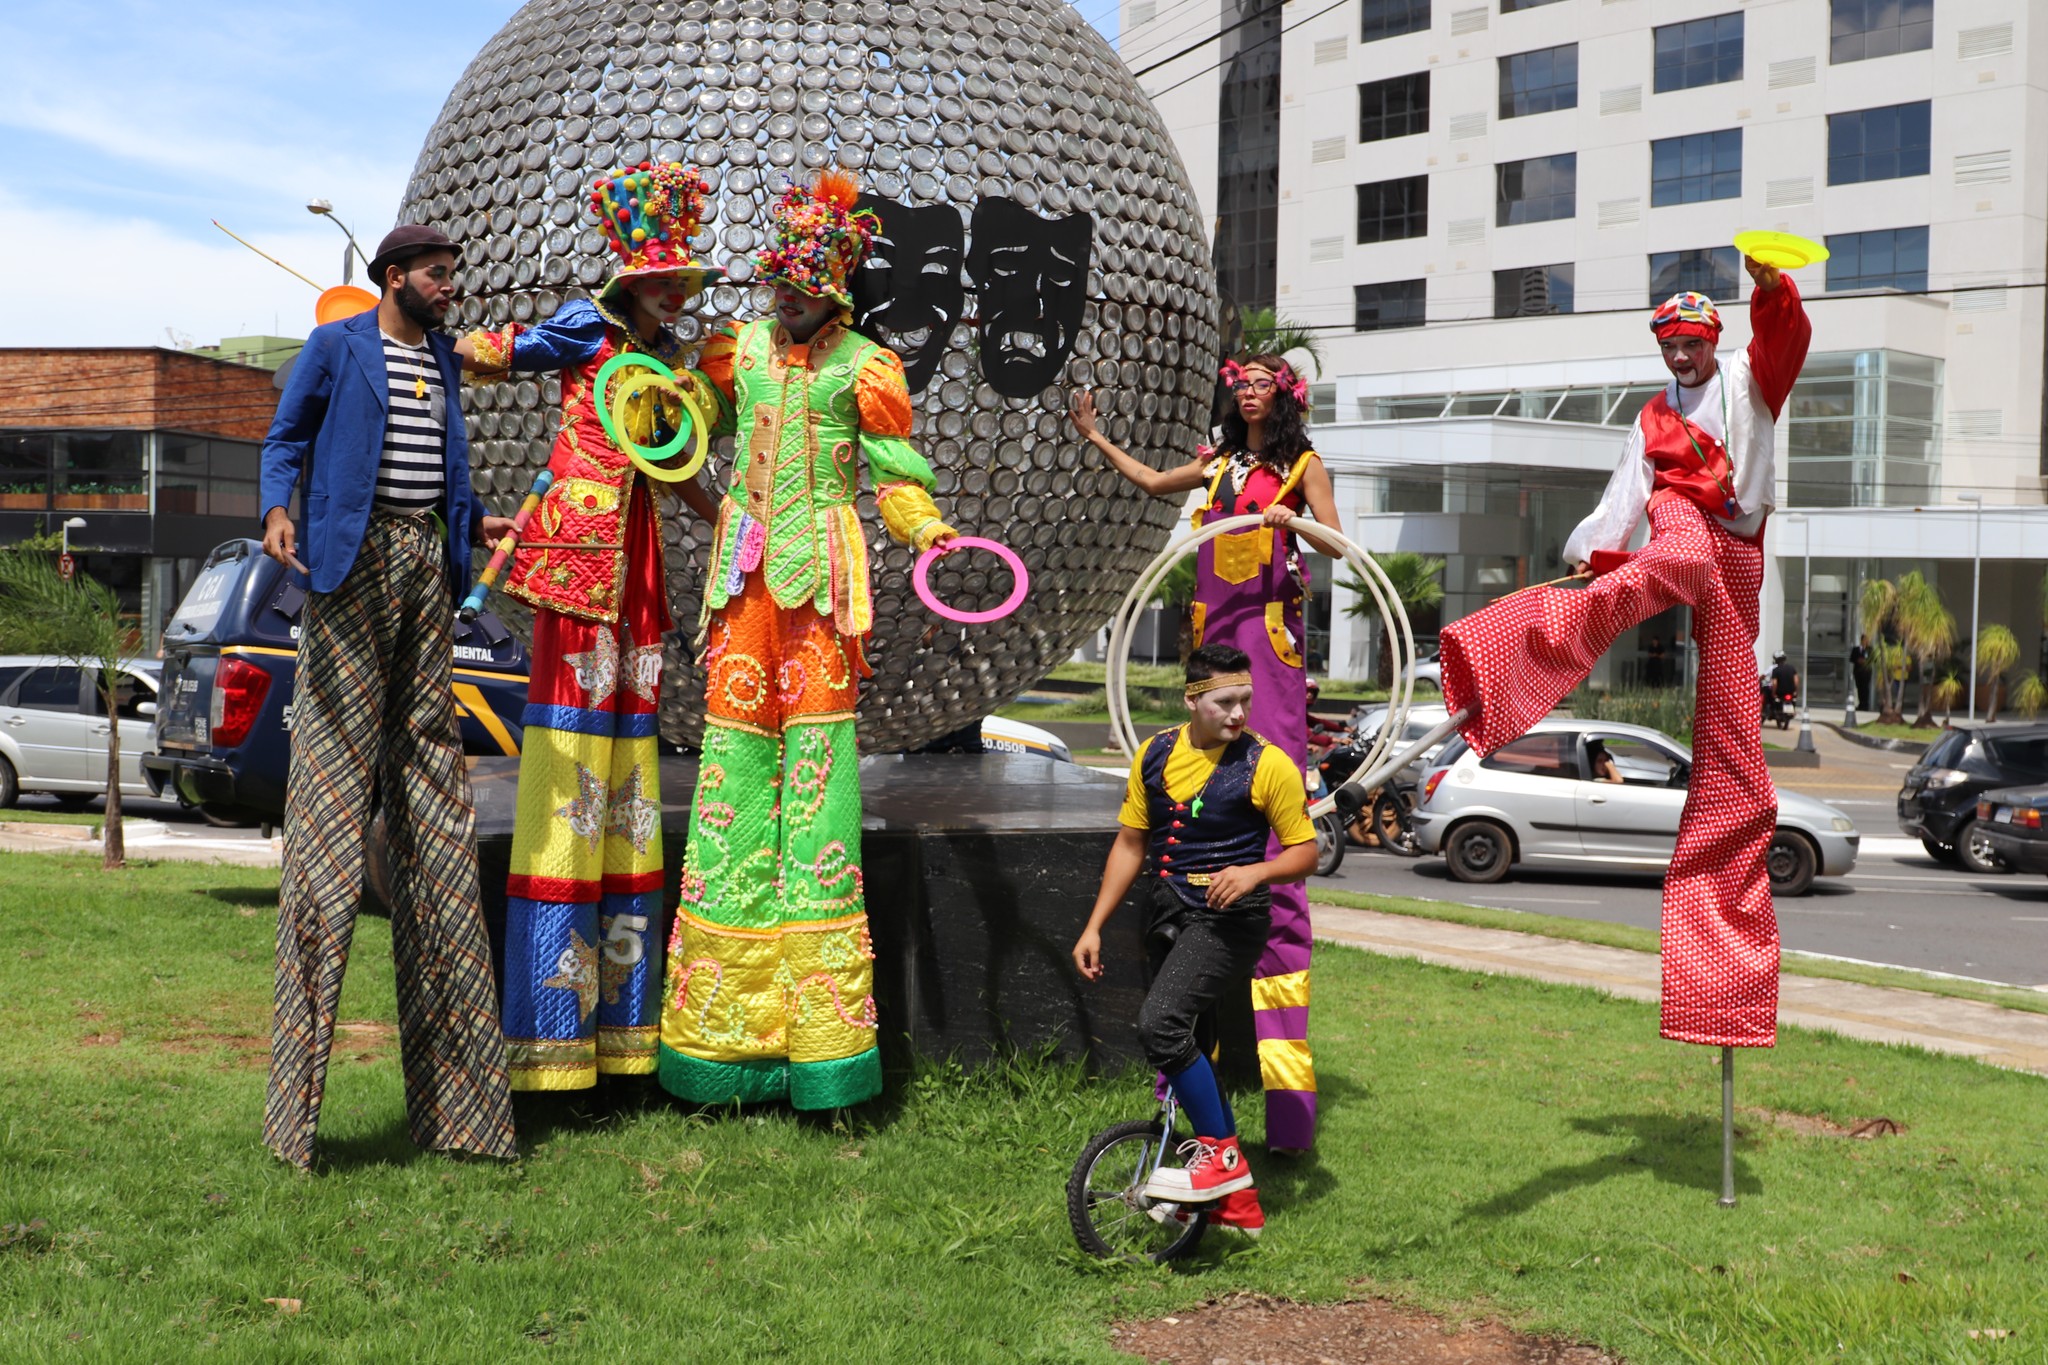 Prefeitura de Goiânia promove Encontro das Culturas com representantes dos governos municipal, estadual e federal, nesta quarta-feira (29/03)